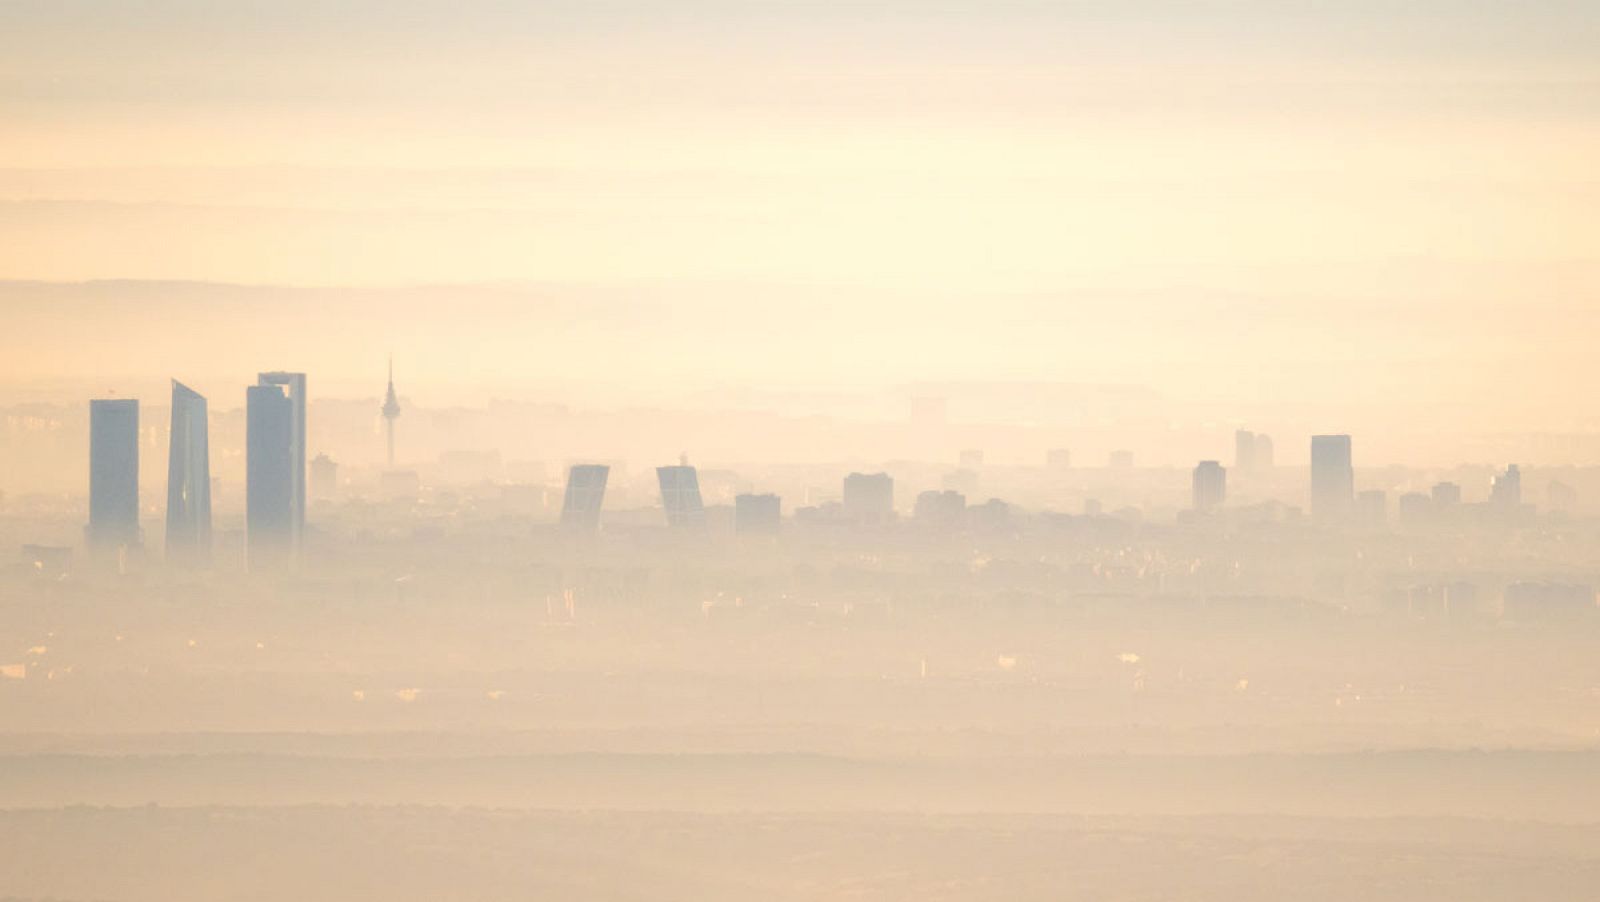 La polución del aire es uno de los problemas más graves para las grandes ciudades europeas, como Madrid.